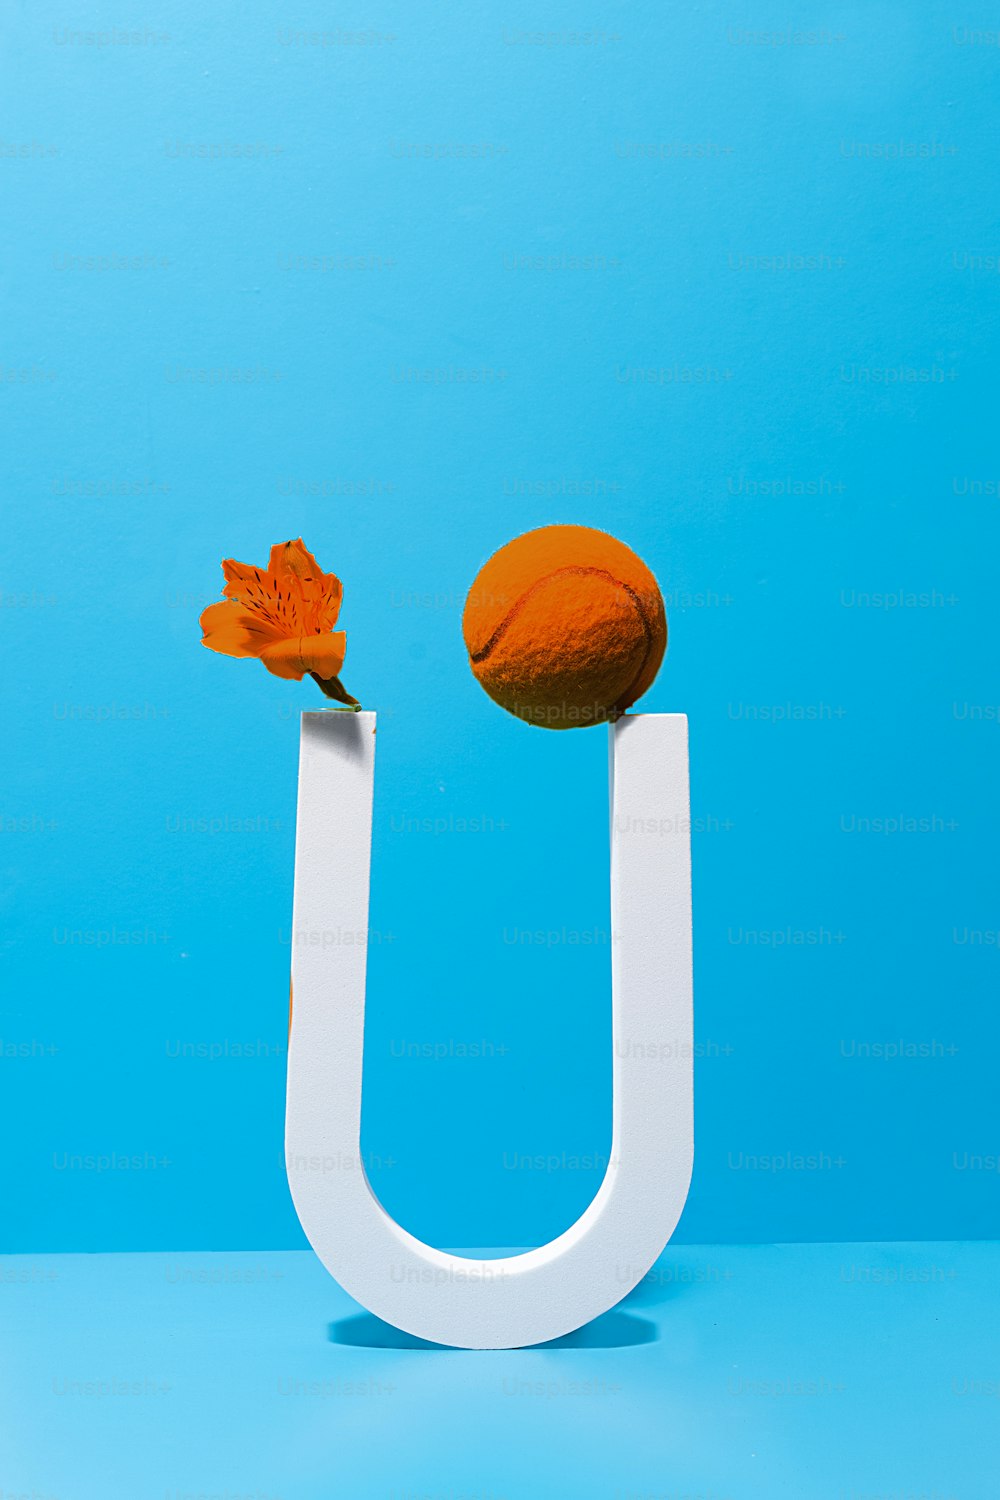 um objeto laranja sentado em cima de um objeto branco